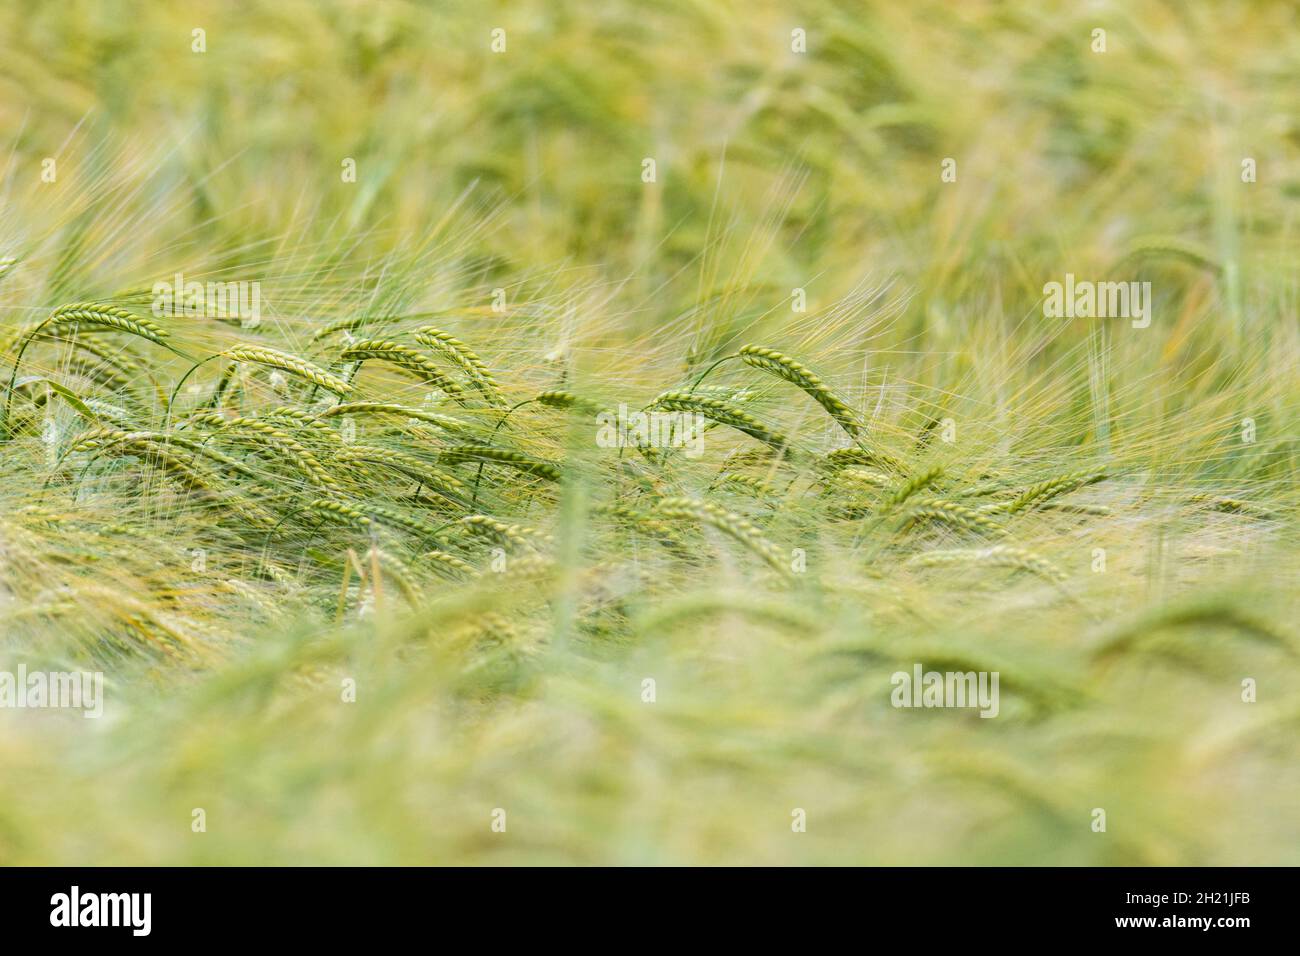 Green Fields of England Concept. Teste di verde Barley / Hordeum vulgare in crescita. Metafora visiva del concetto di carestia, sicurezza alimentare. Foto Stock